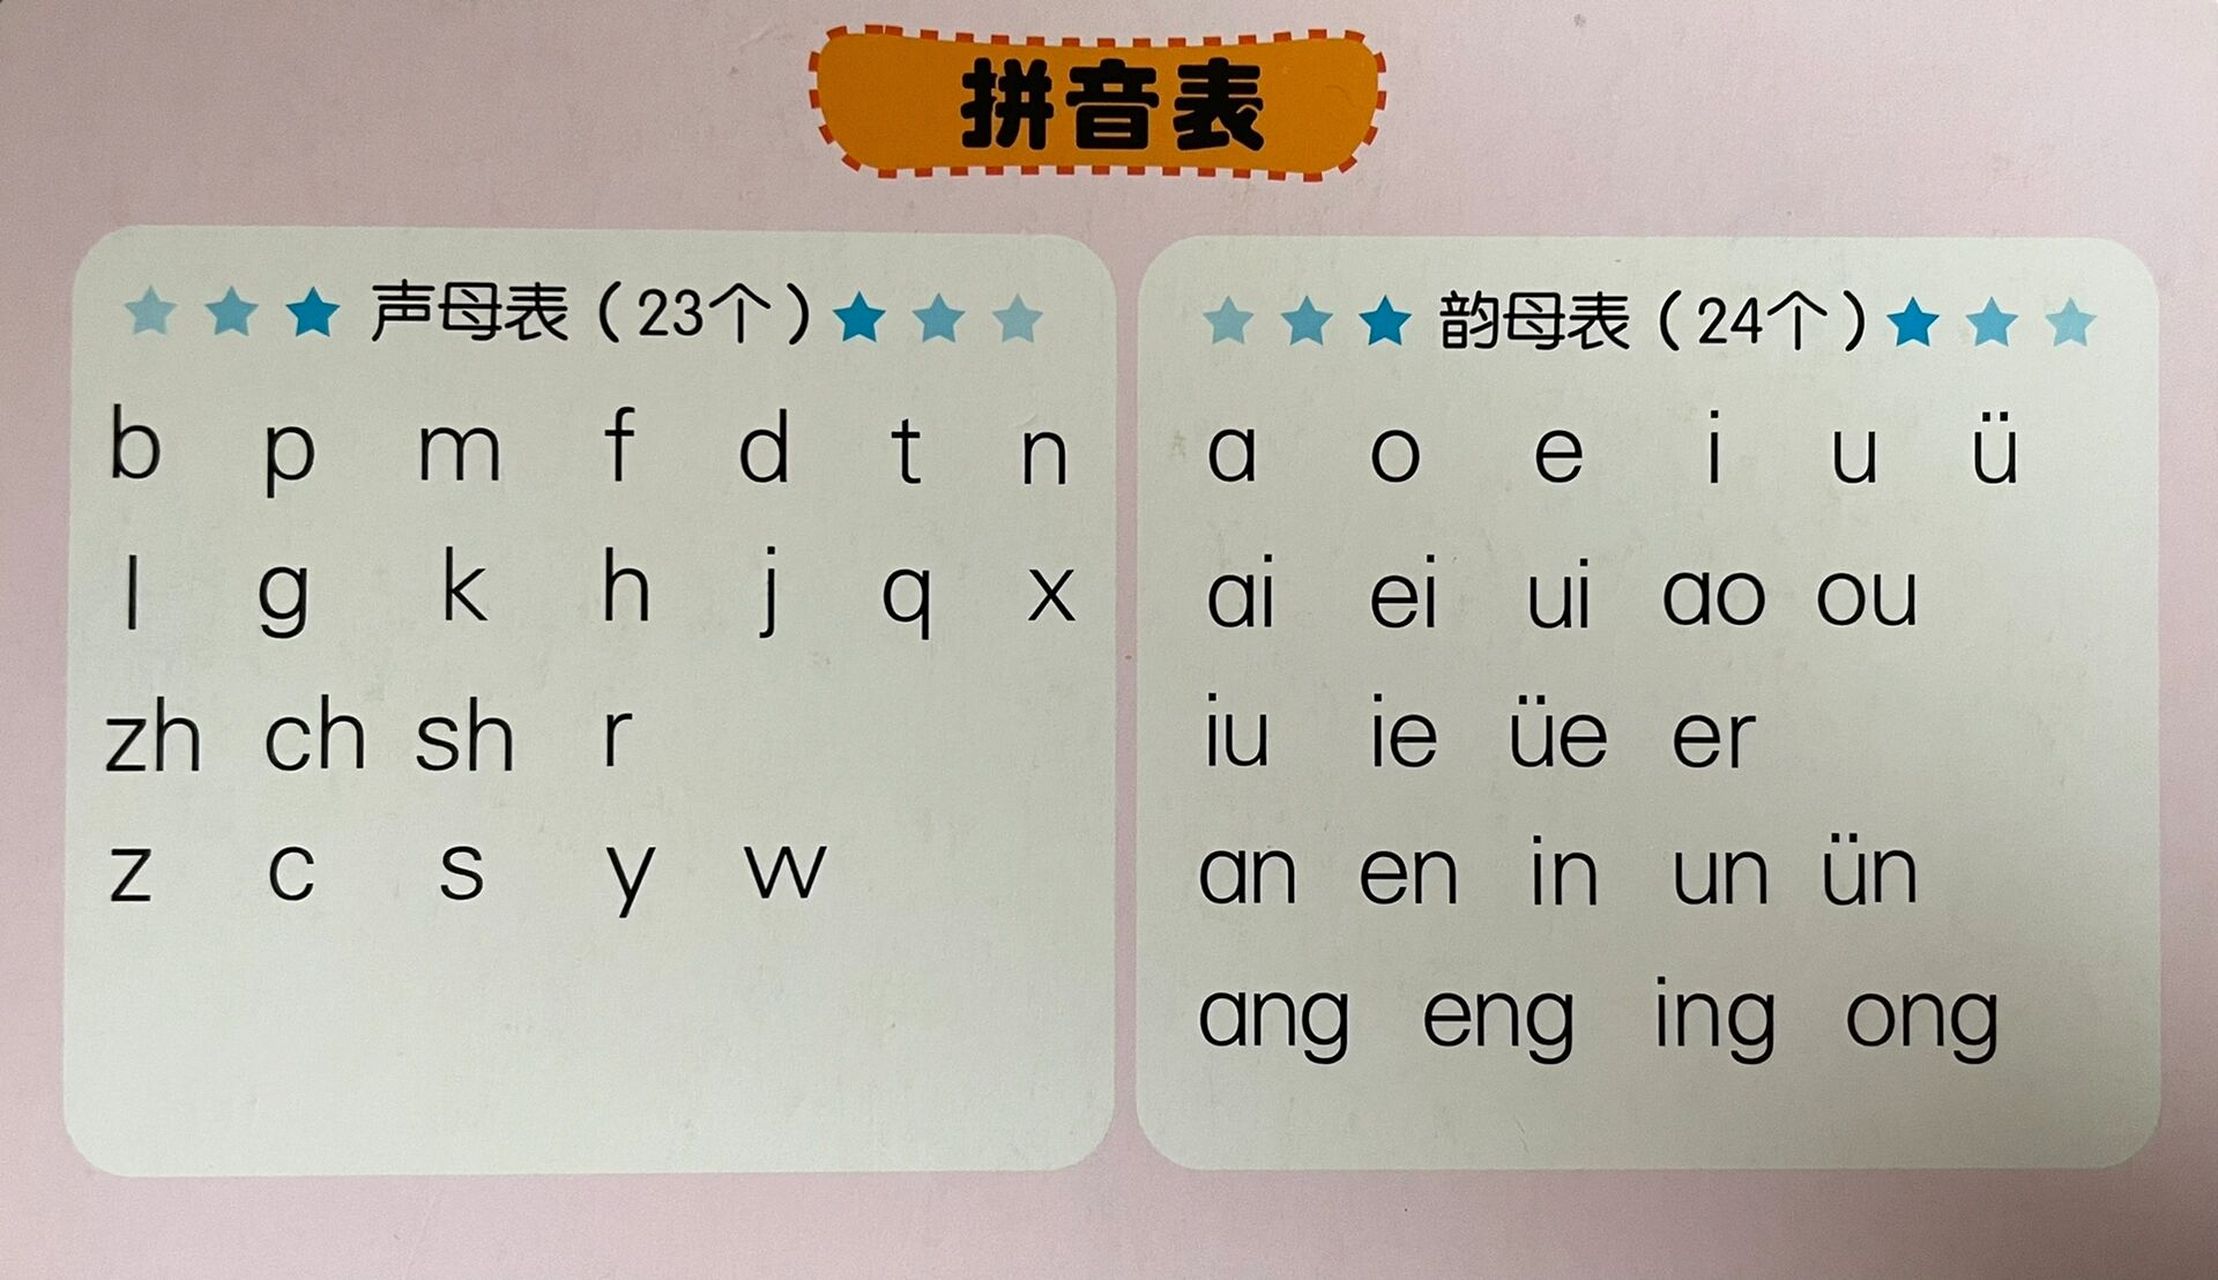 拼音表:声母 韵母 整体认读音节 可打印出来用